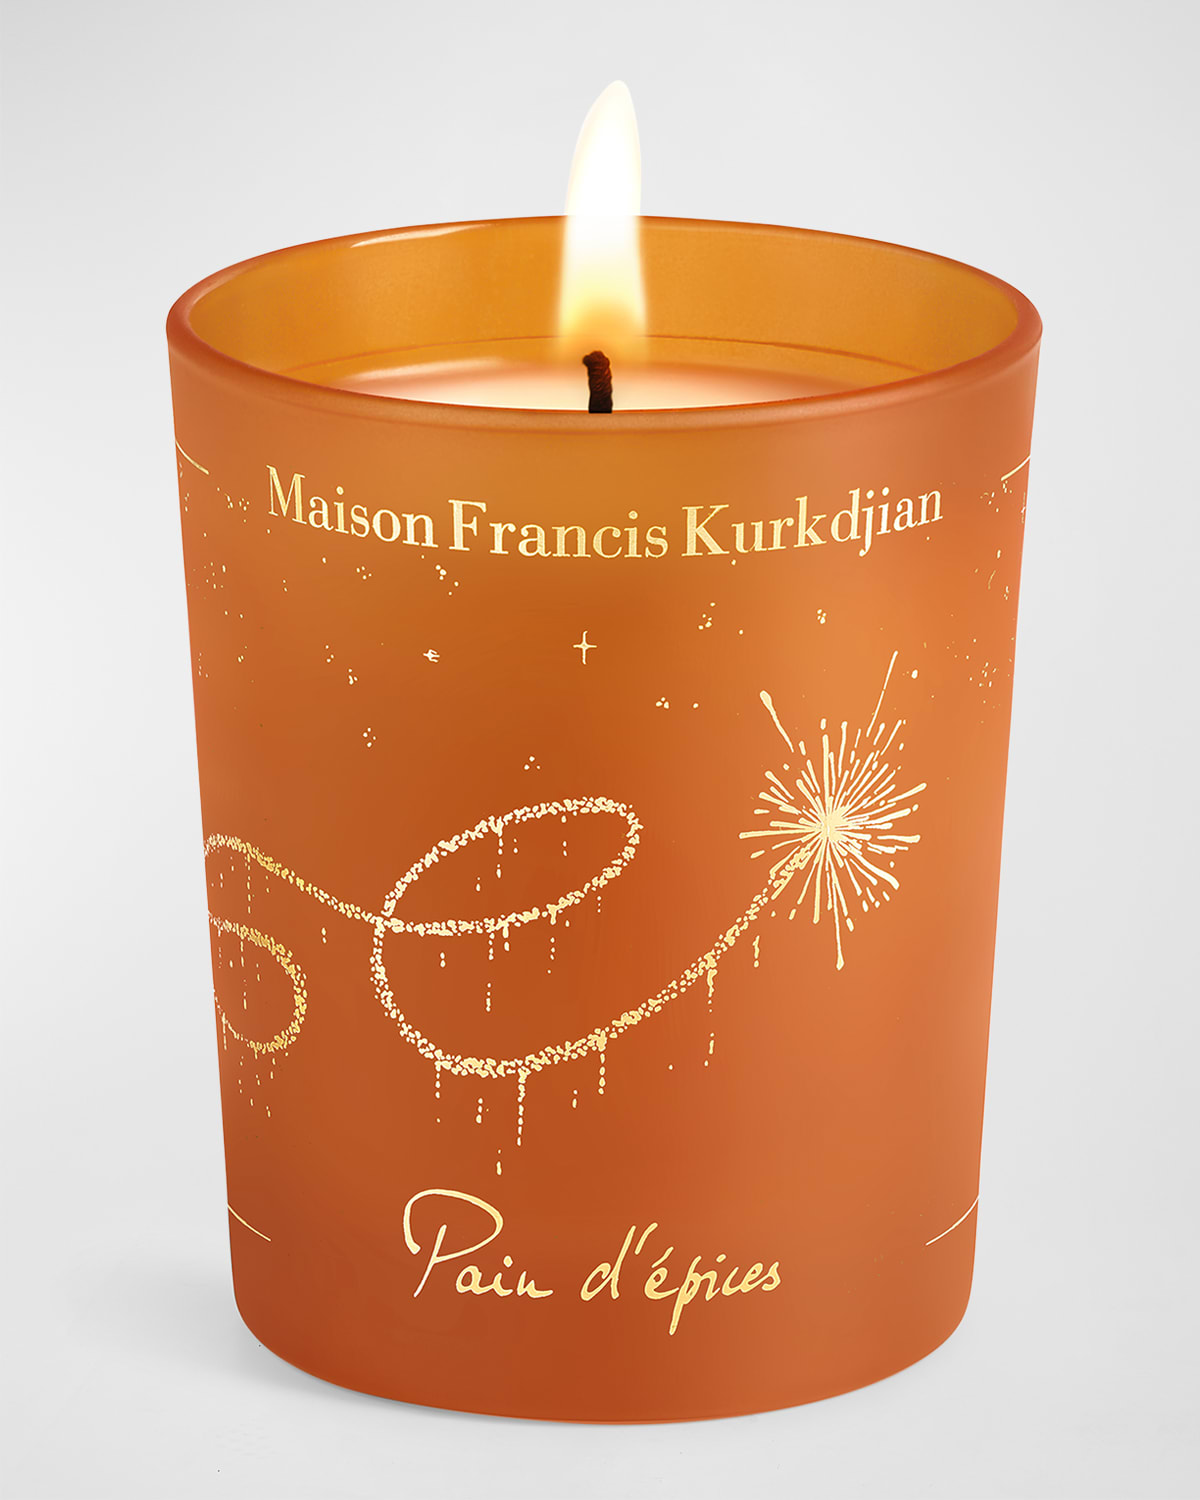 Shop Maison Francis Kurkdjian Pain D'spices Candle, 6.3 Oz.